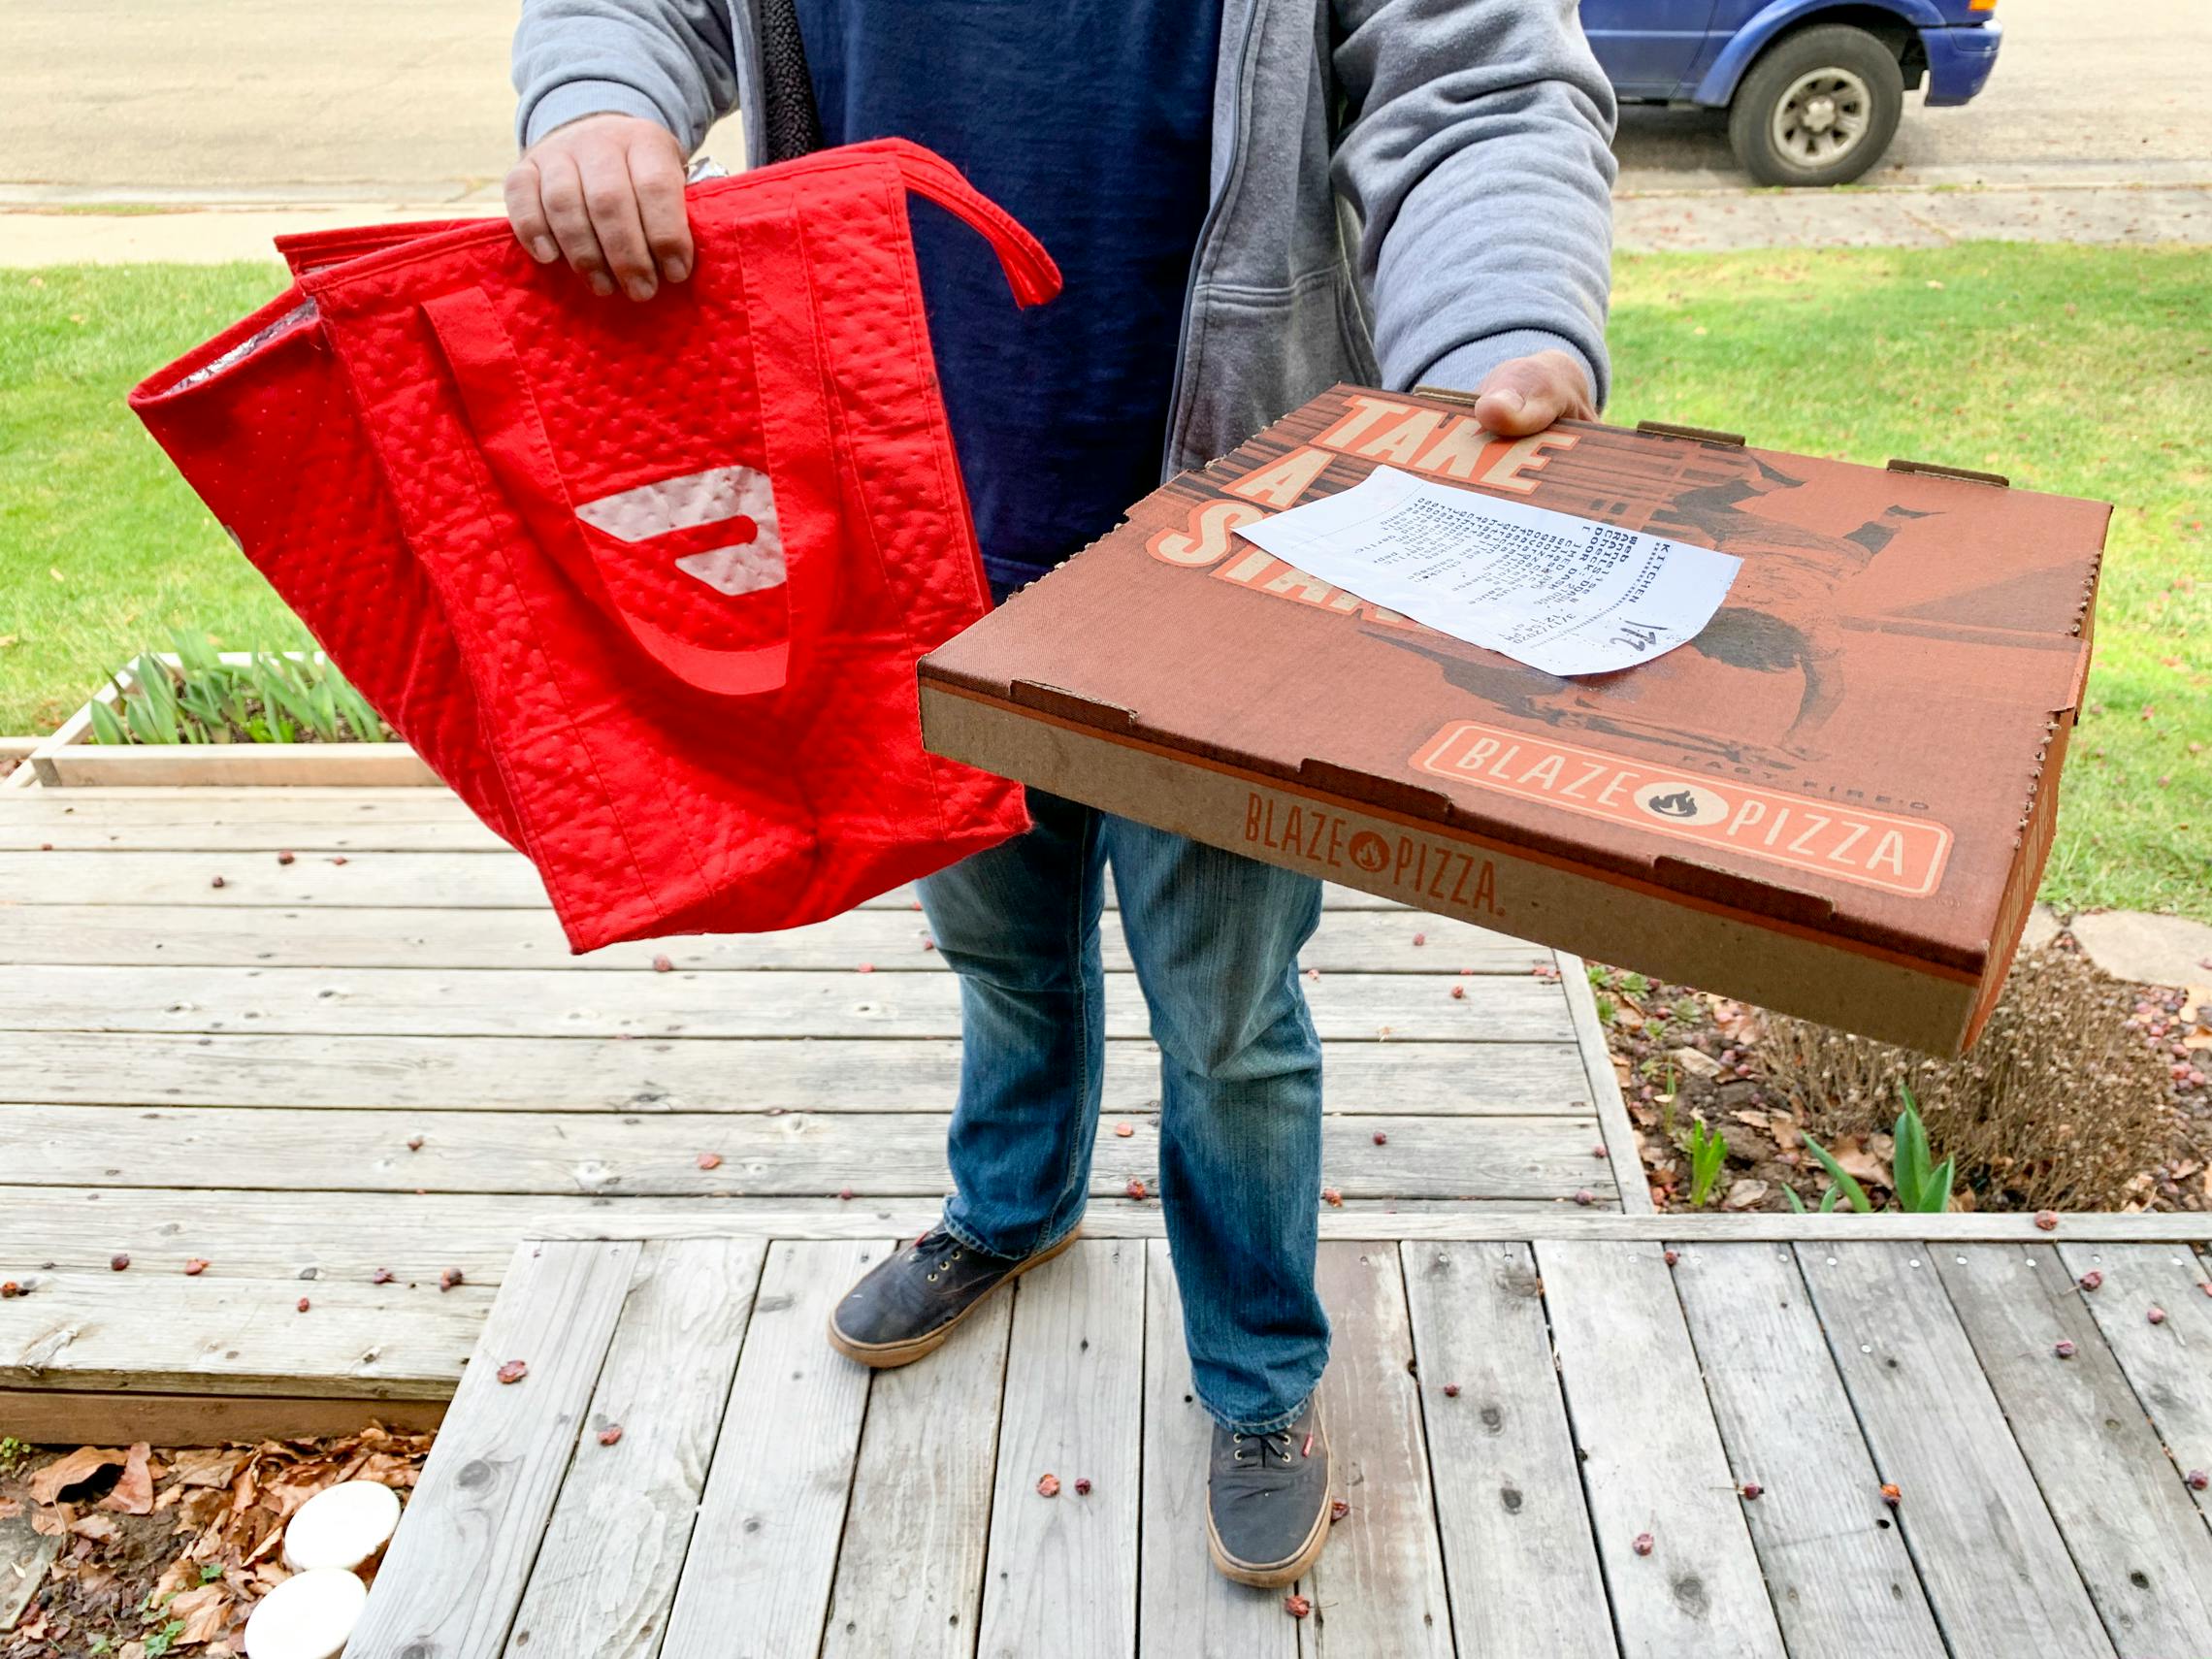 Doordash delivery person delivering a pizza.